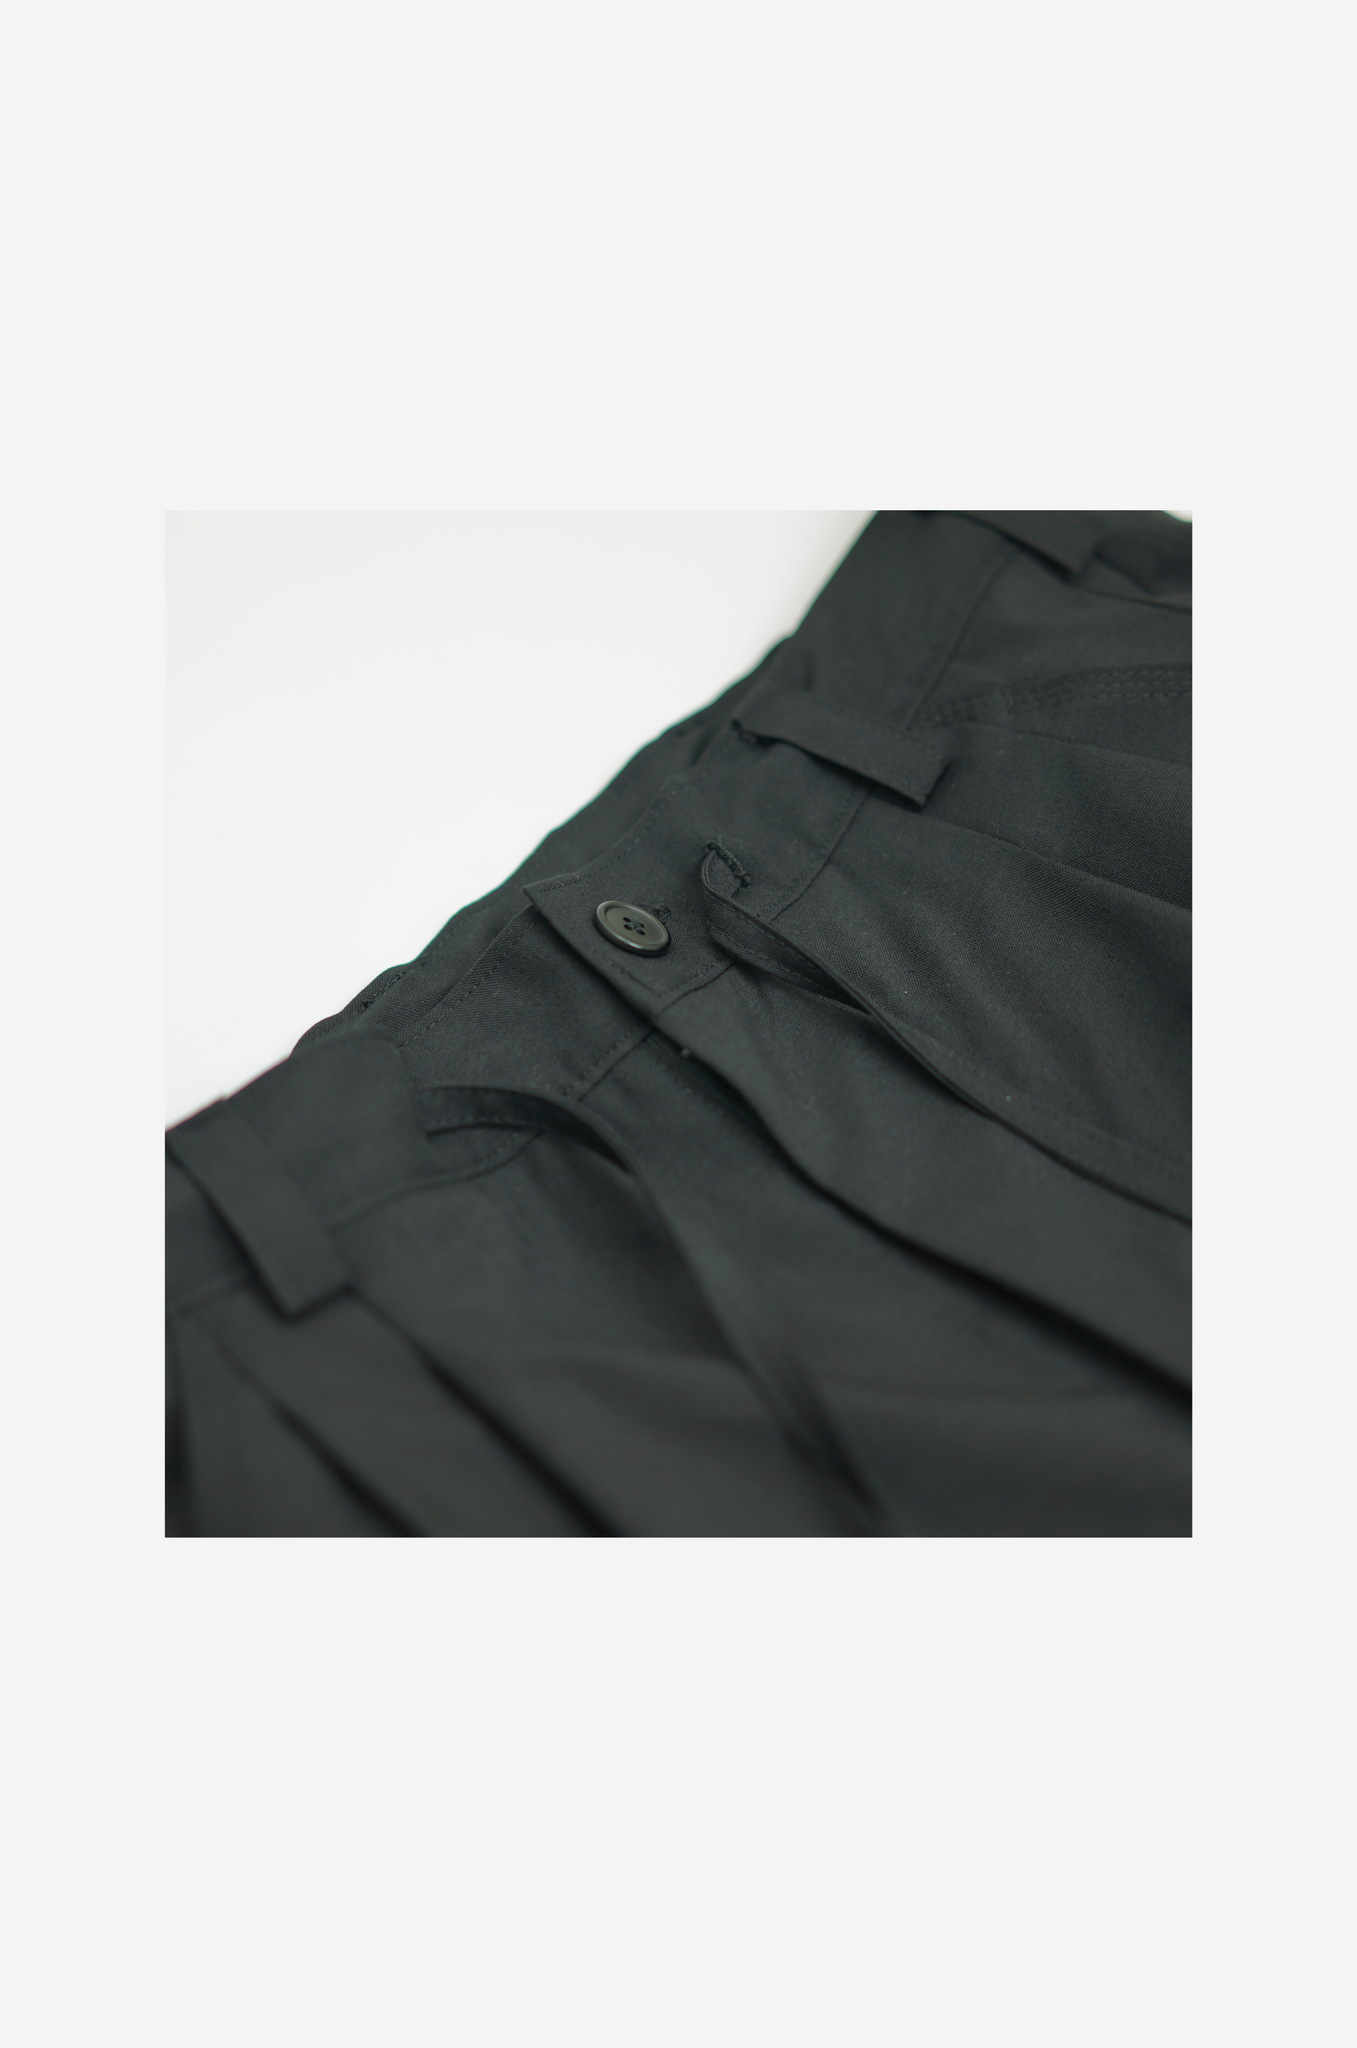 Dual wide pants “Black”